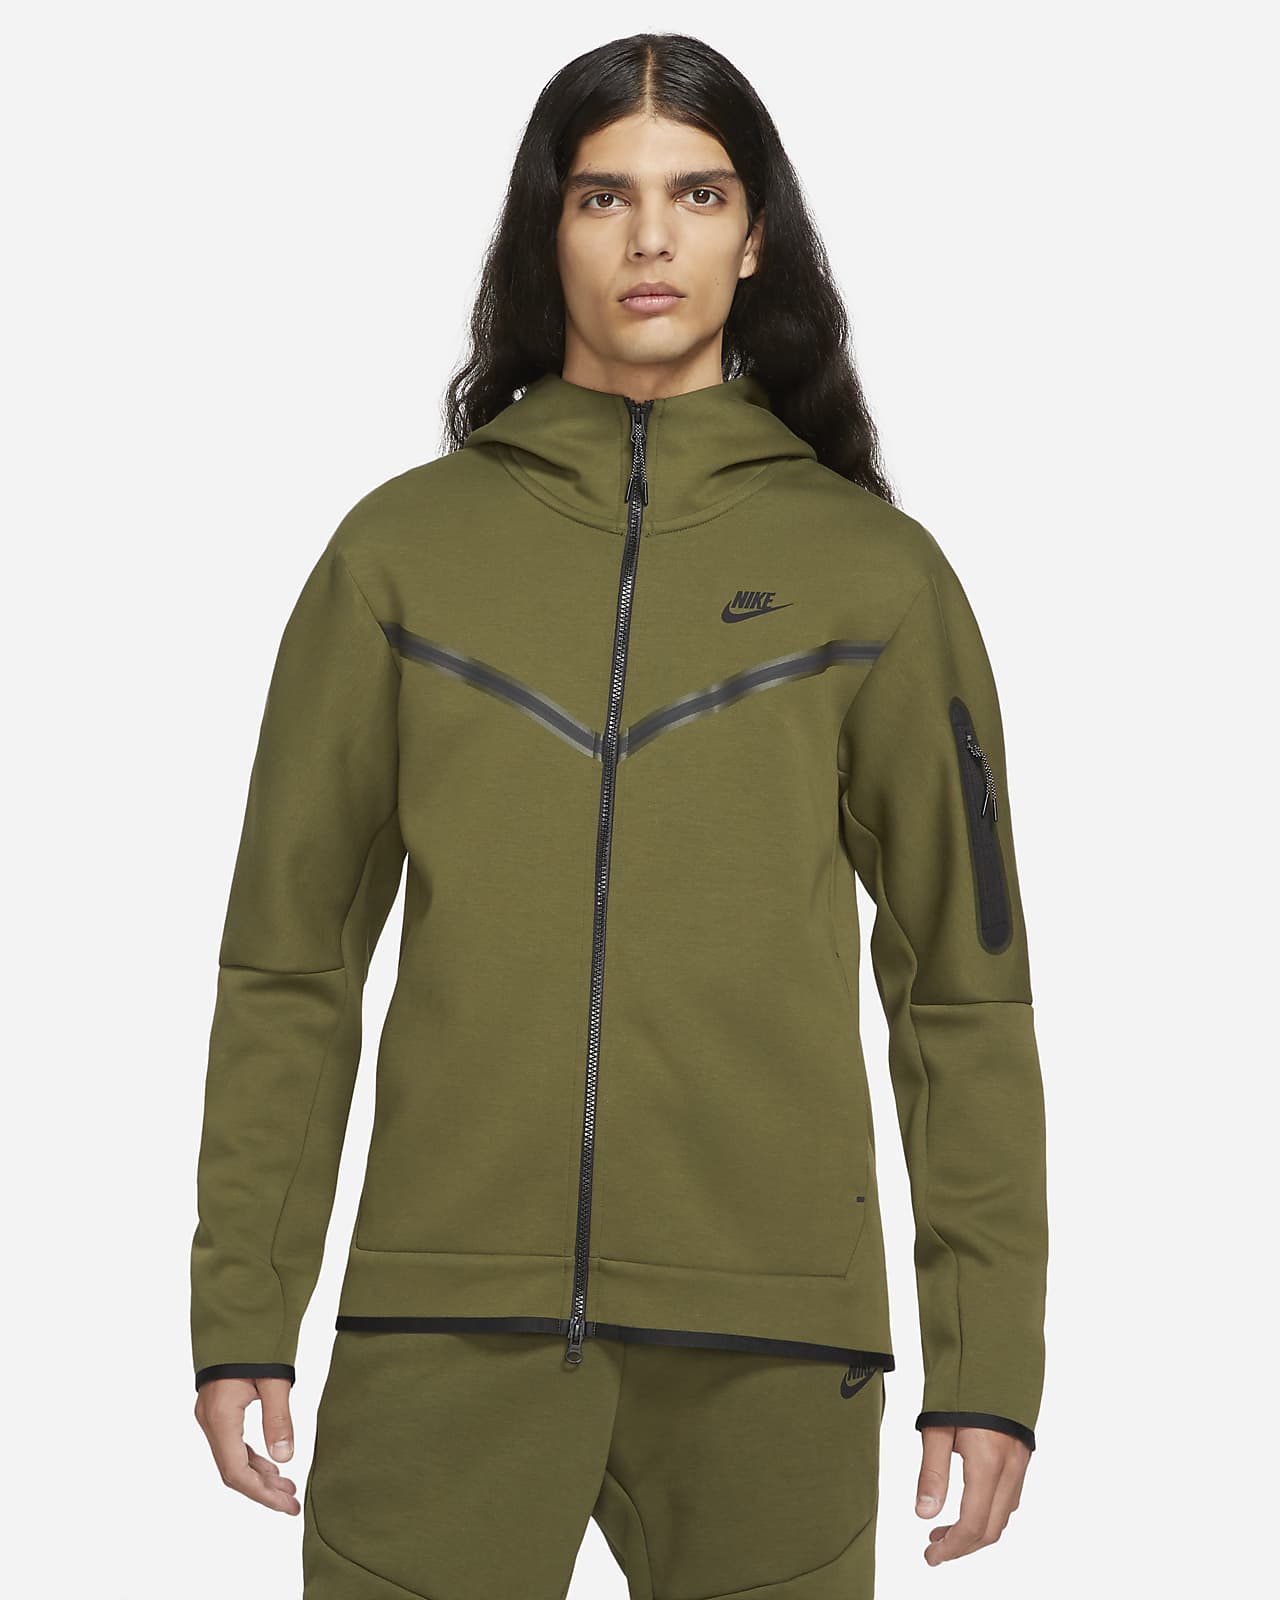 Nike Sportswear Tech Fleece OG Men's Slim Fit Jacket